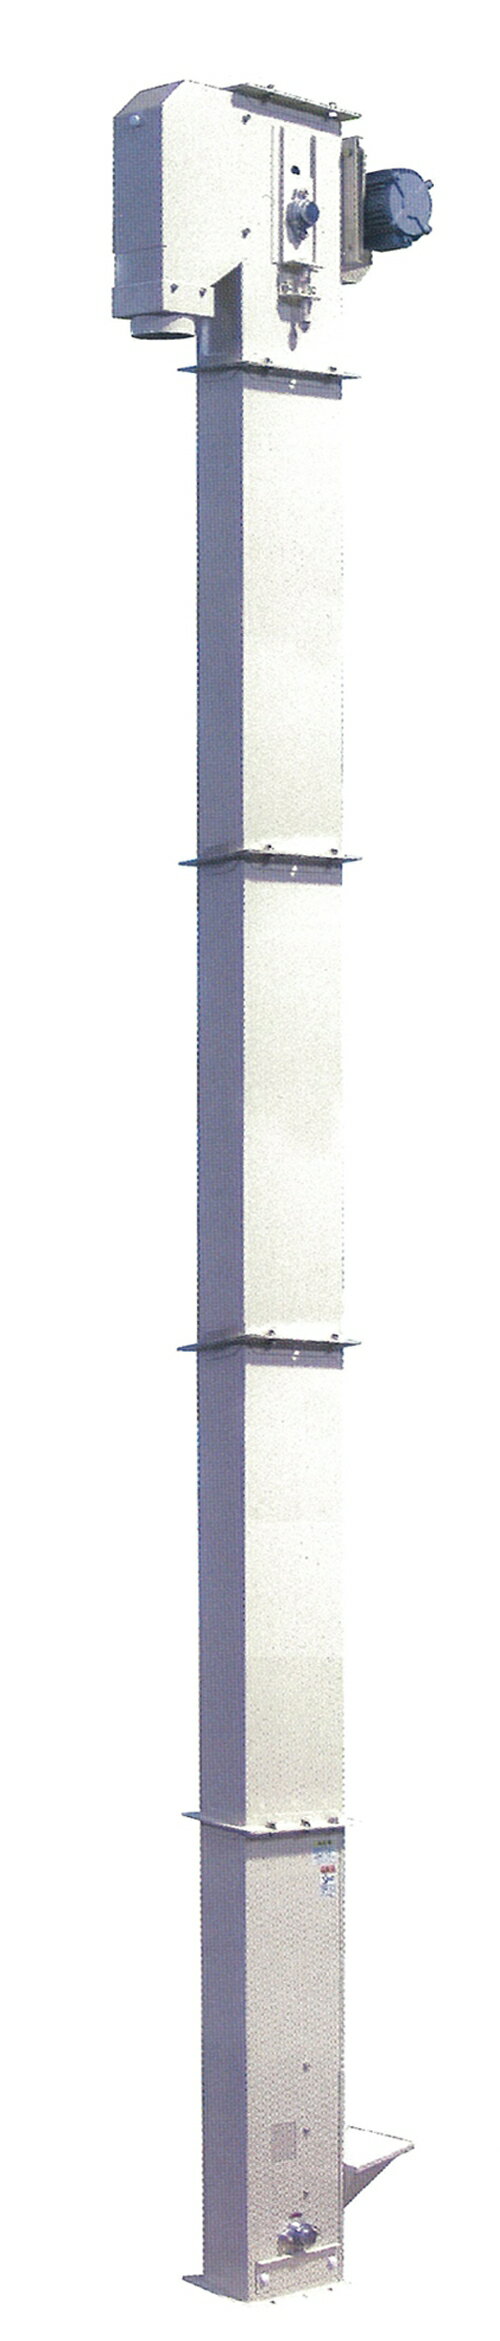 長尺昇降機 イリノ ロングバケット600シリーズ LB1-647D 白米 玄米 豆 搬送 搬送用 業務用 基本